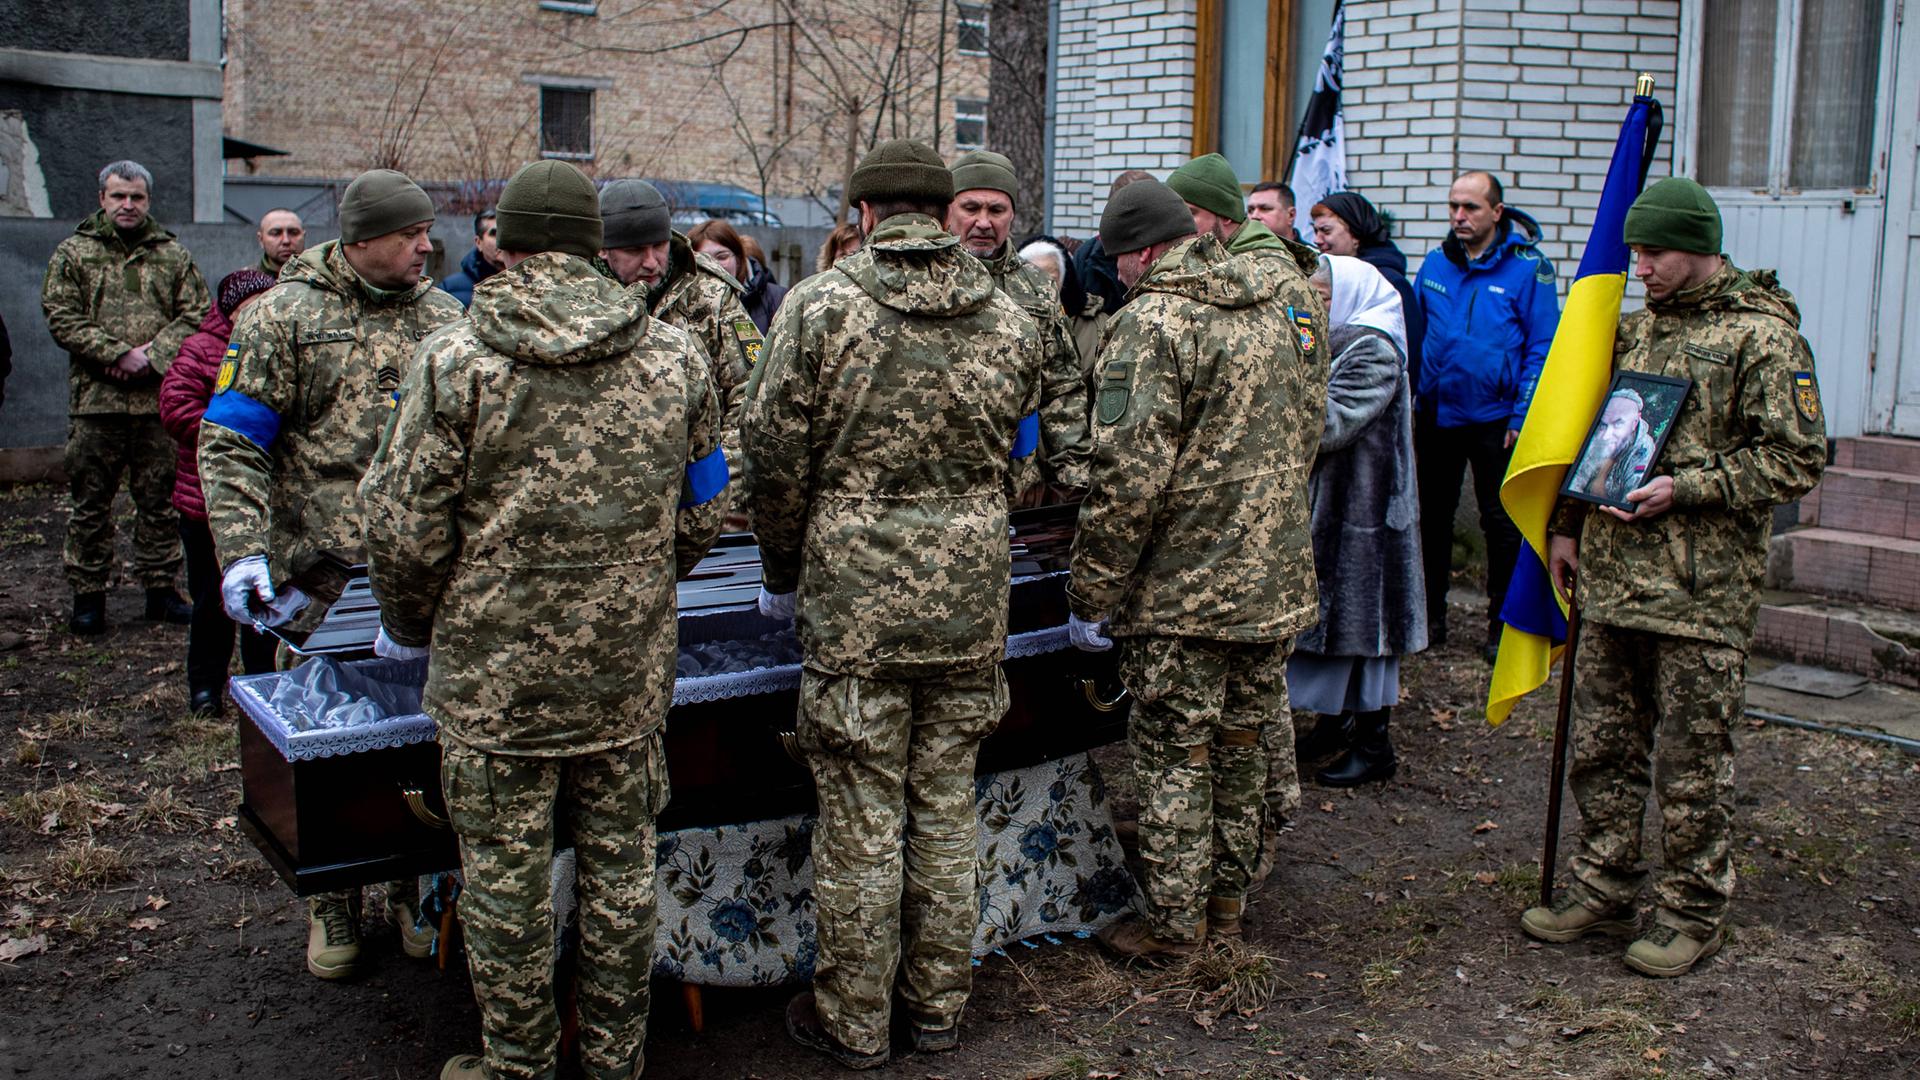 Ukrainische Soldaten halten Mahnwache an einem Sarg im Freien.